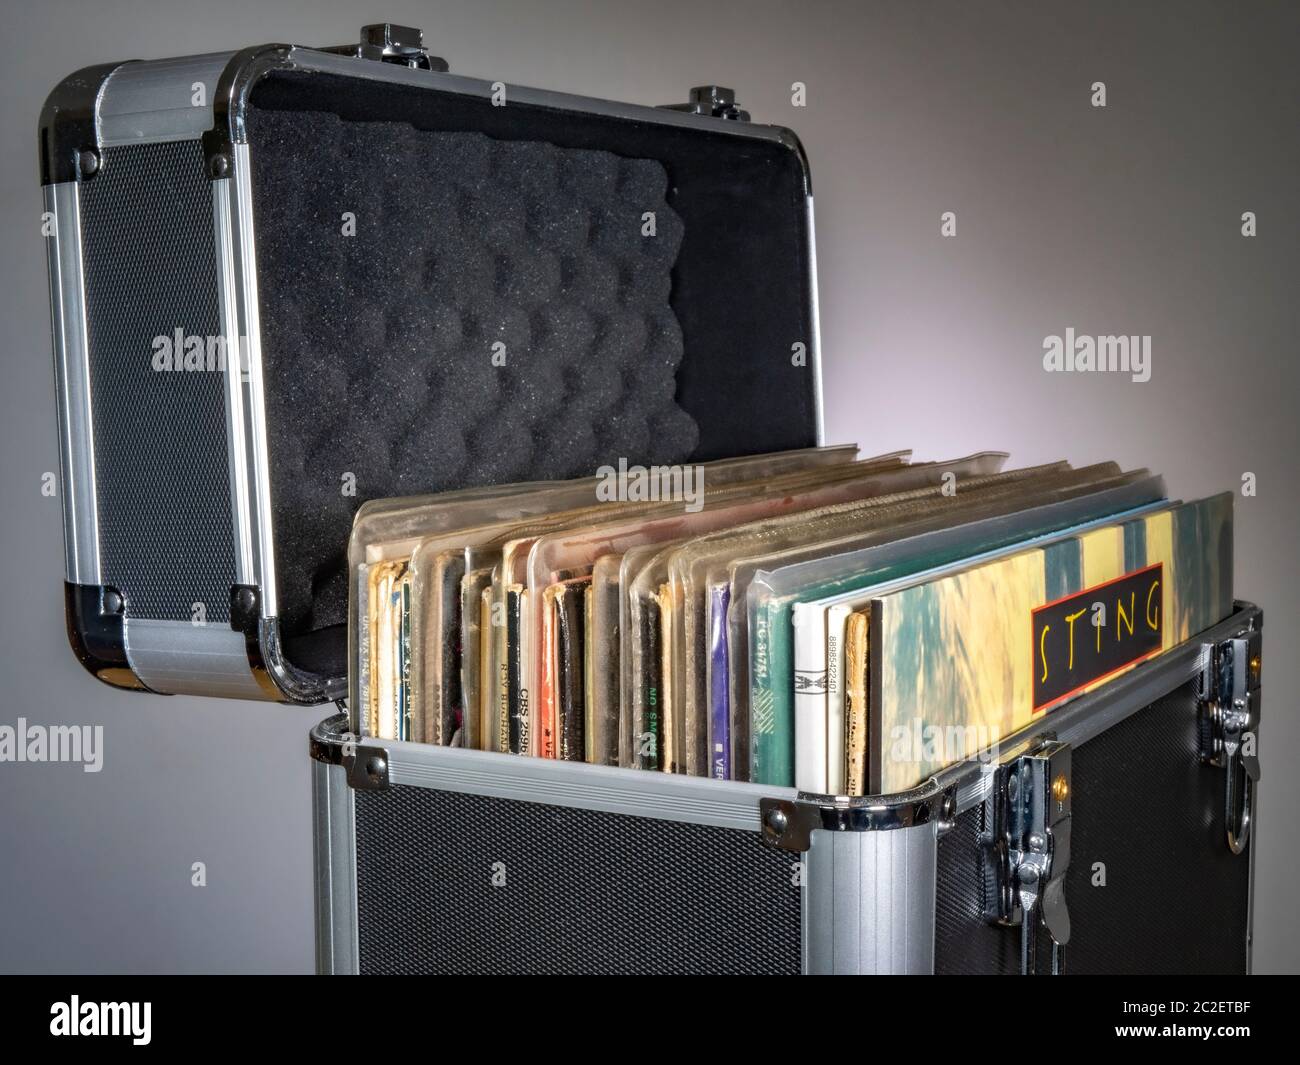 Album in vinile / dischi musicali LP nelle loro copertine di cartone, imballati in una custodia protettiva / flight case, con un album Sting sul davanti. Foto Stock